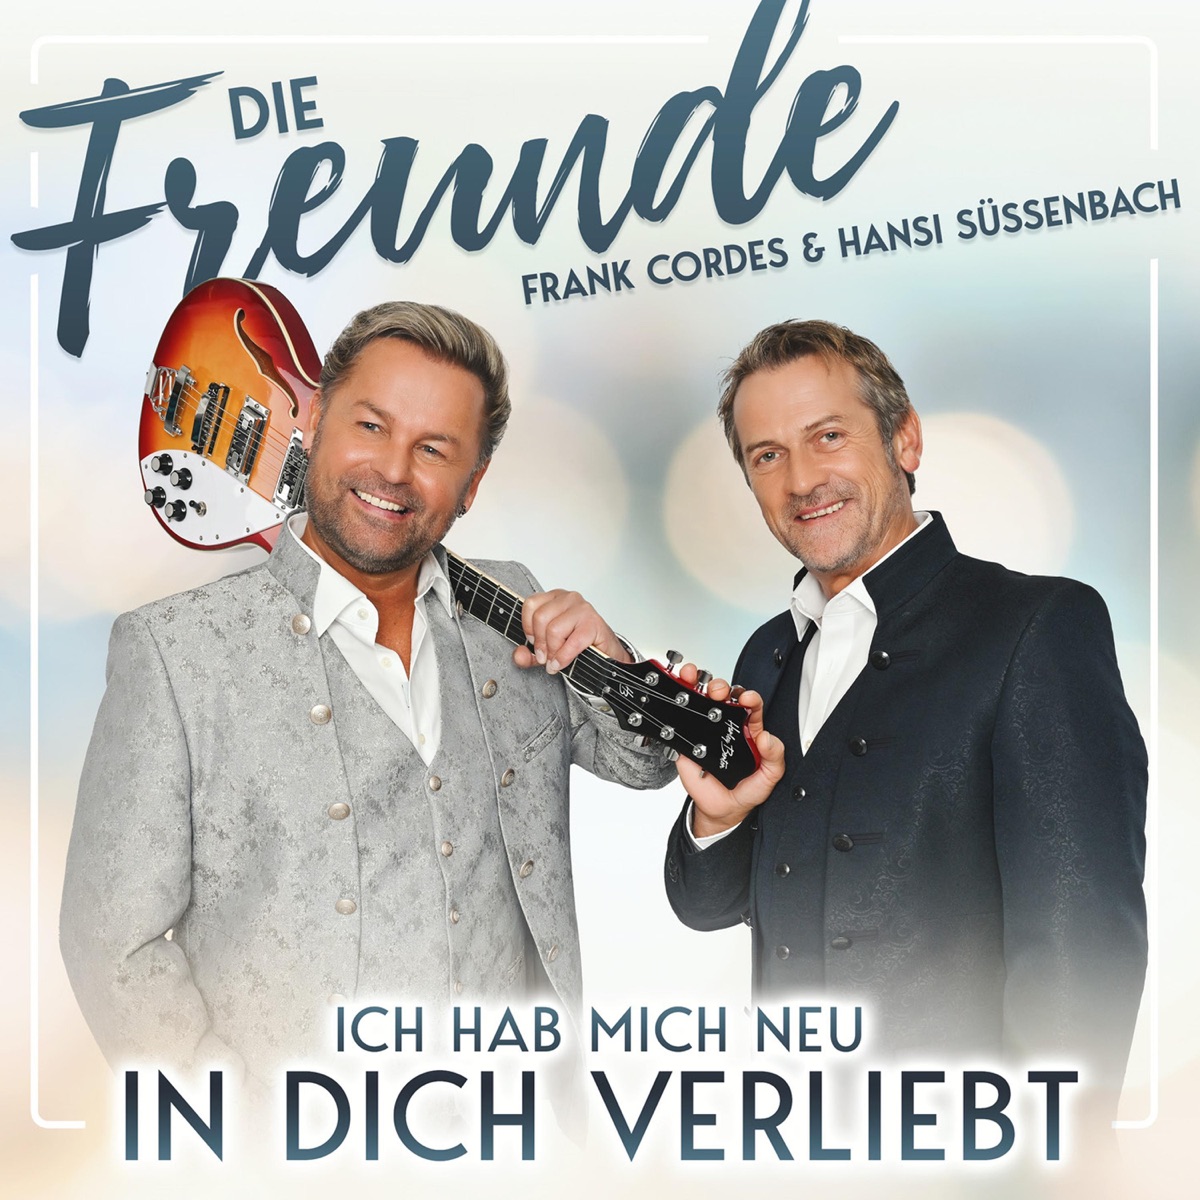 Die Freunde - Frank Cordes & Hansi Süssenbach - Ich hab mich neu in dich verliebt (2022) 